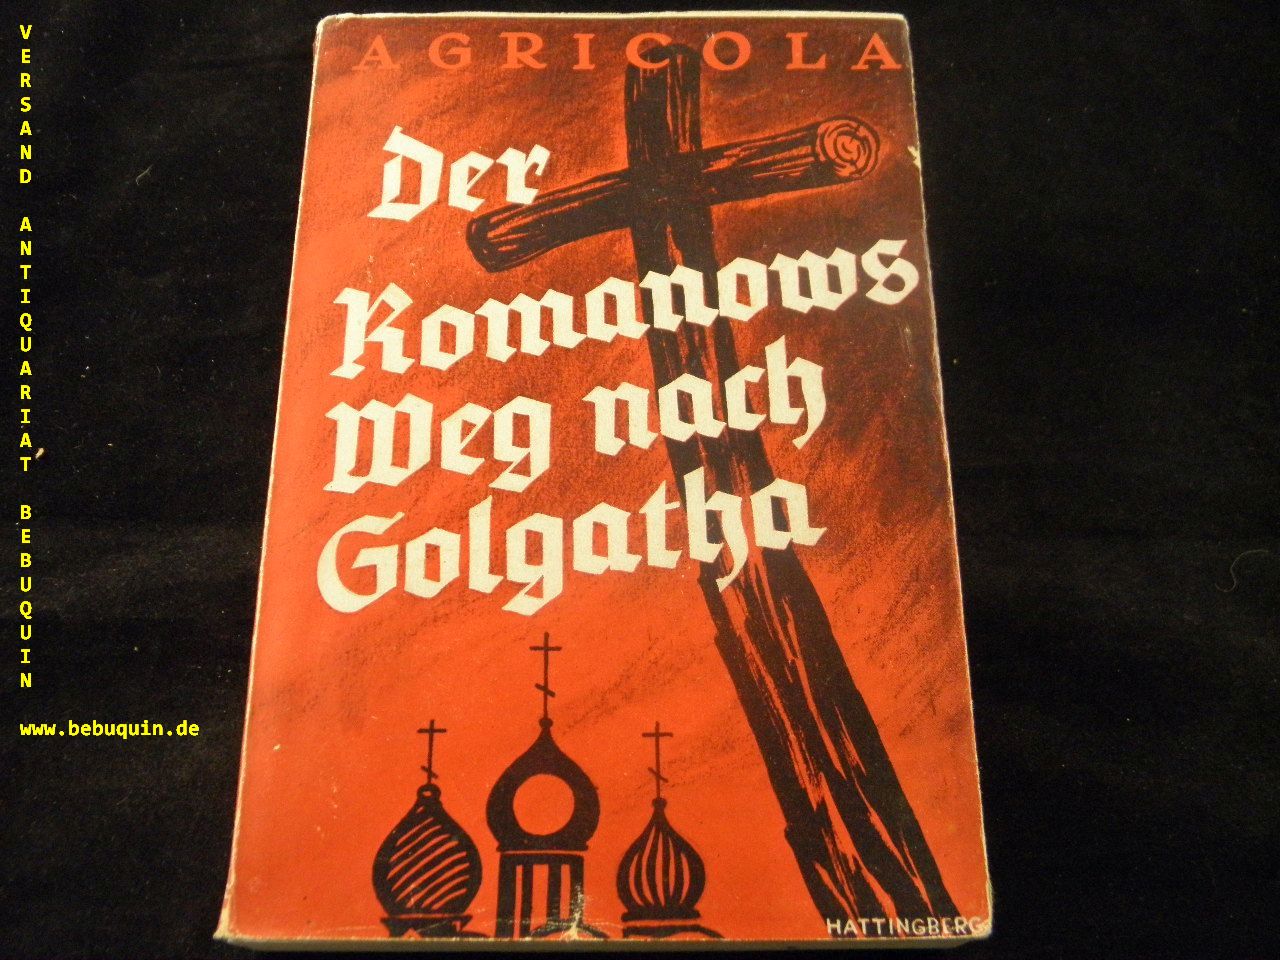 AGRICOLA: - Der Romanows Weg nach Golgatha. Dokumente aus dem Leben der drei letzten Zaren.